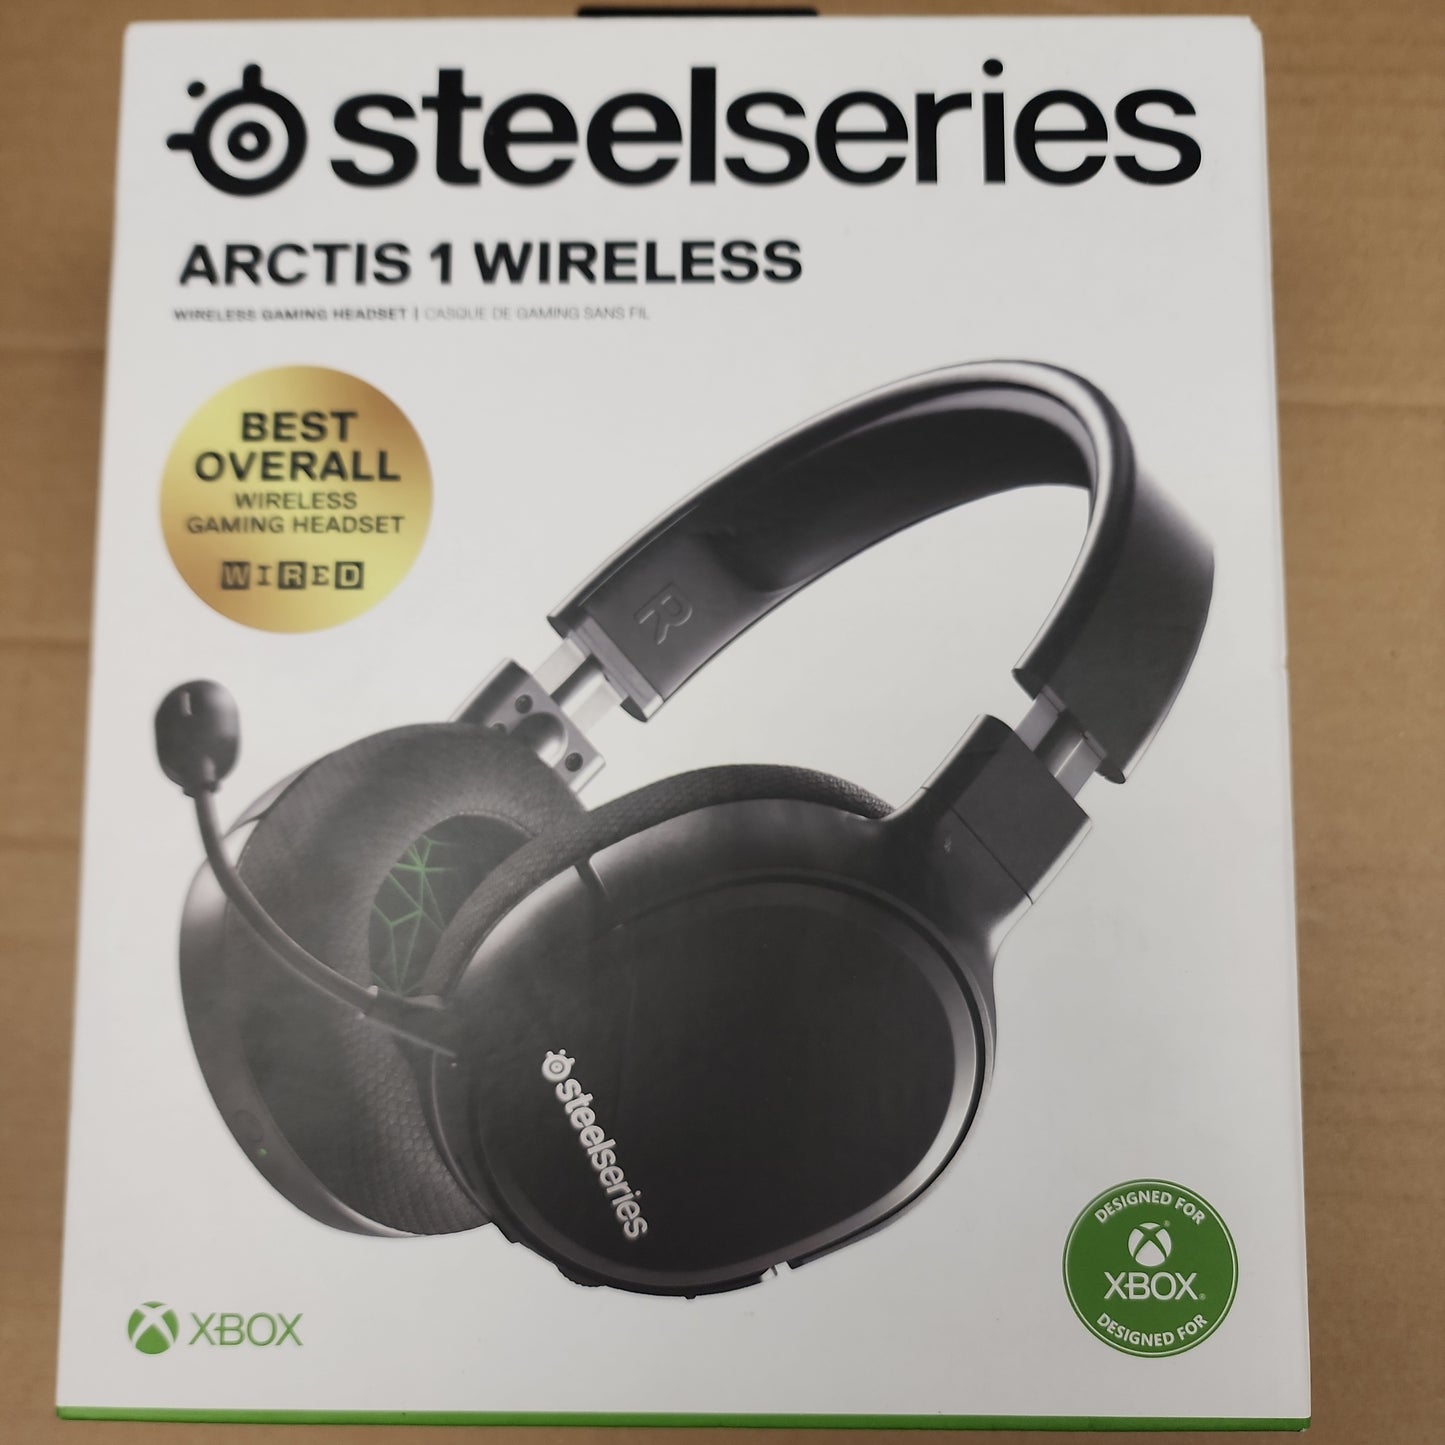 Steelseries Arctis Wireless 1 (Xbox version)